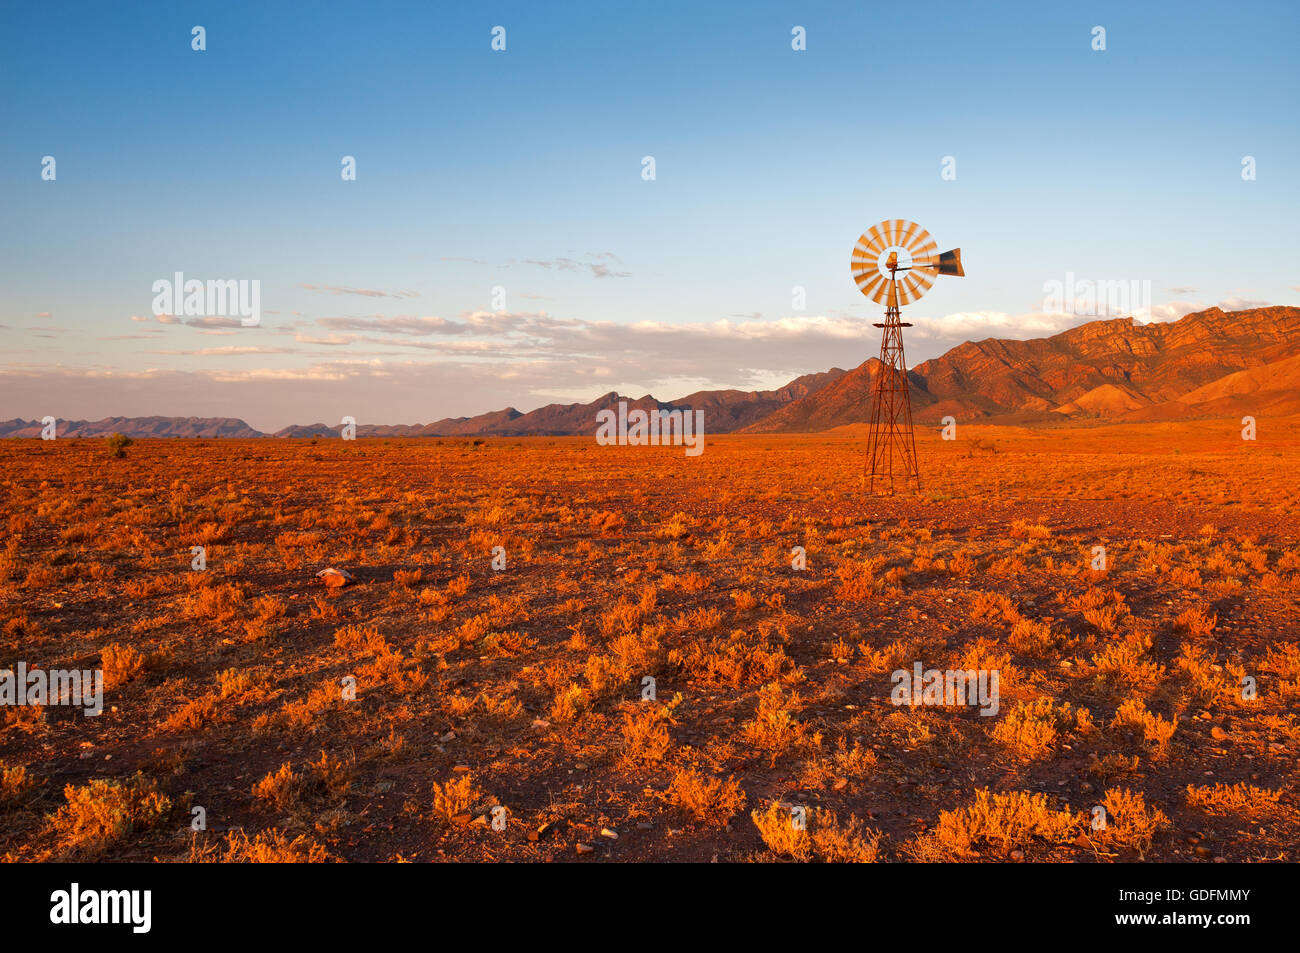 Typisch australisch - Windmühle im roten Farbton eines Sonnenuntergangs. Stockfoto